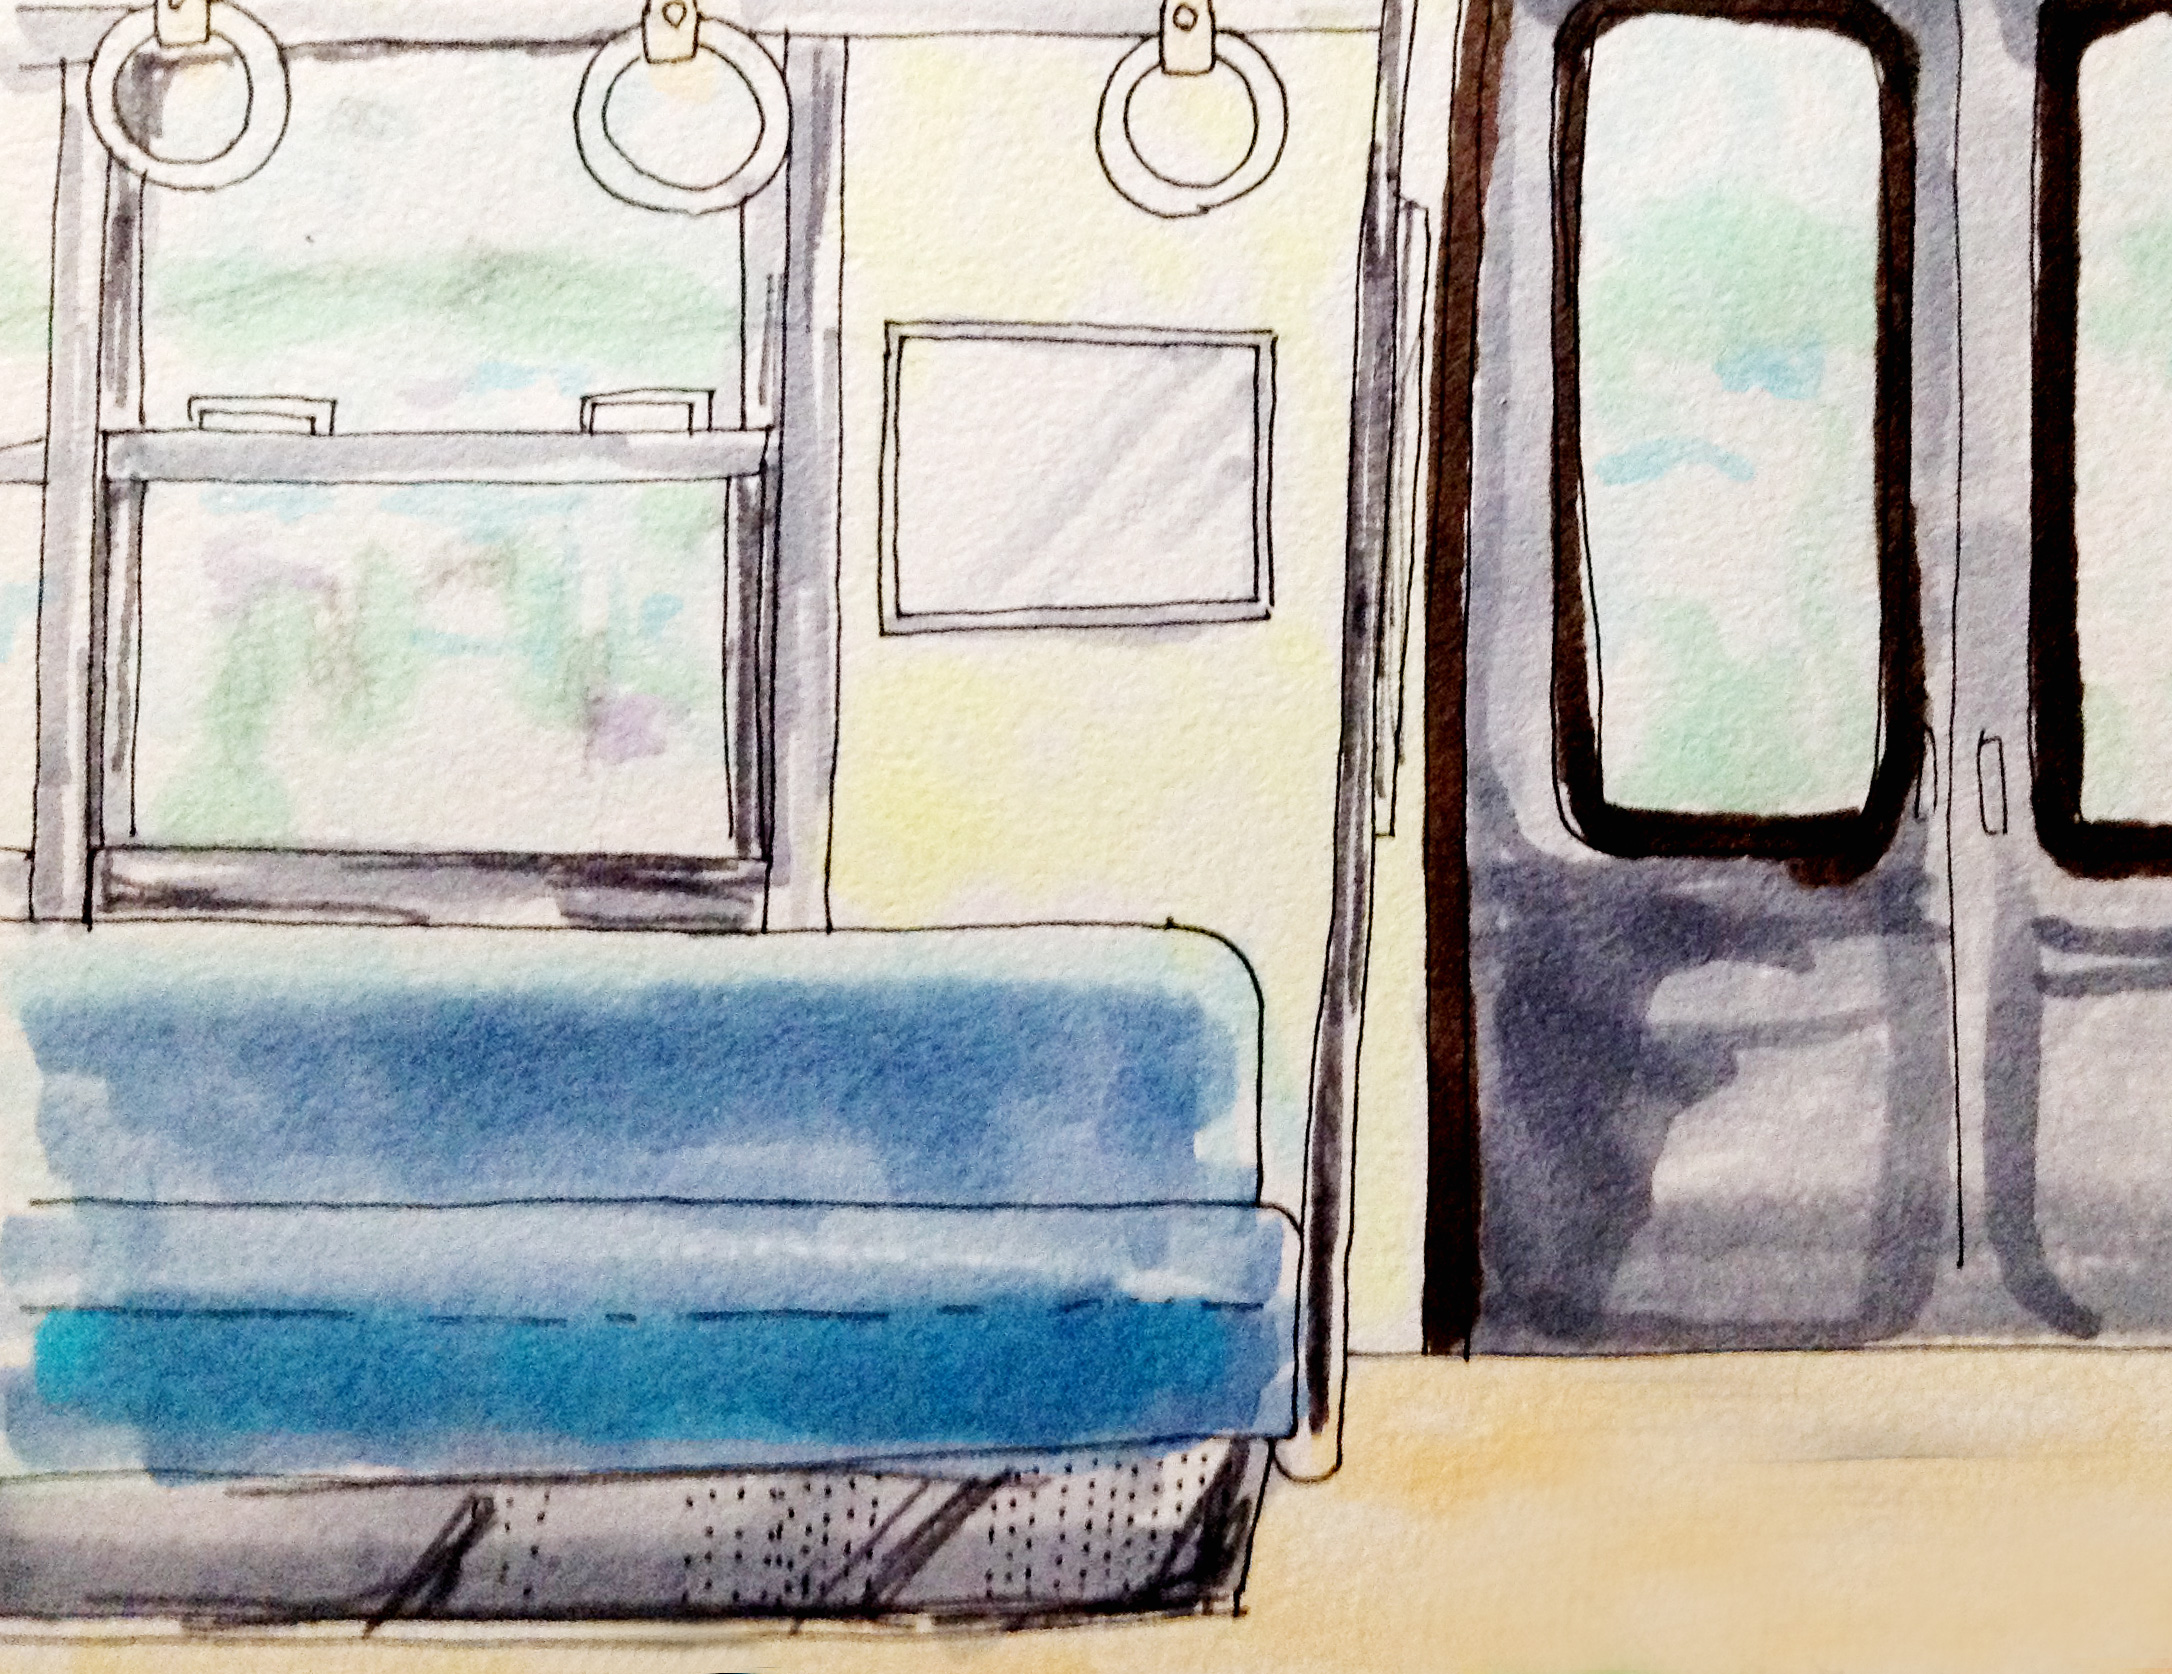 JR阪和線に乗った思い出のイメージをコピックマーカーで描いたイラスト